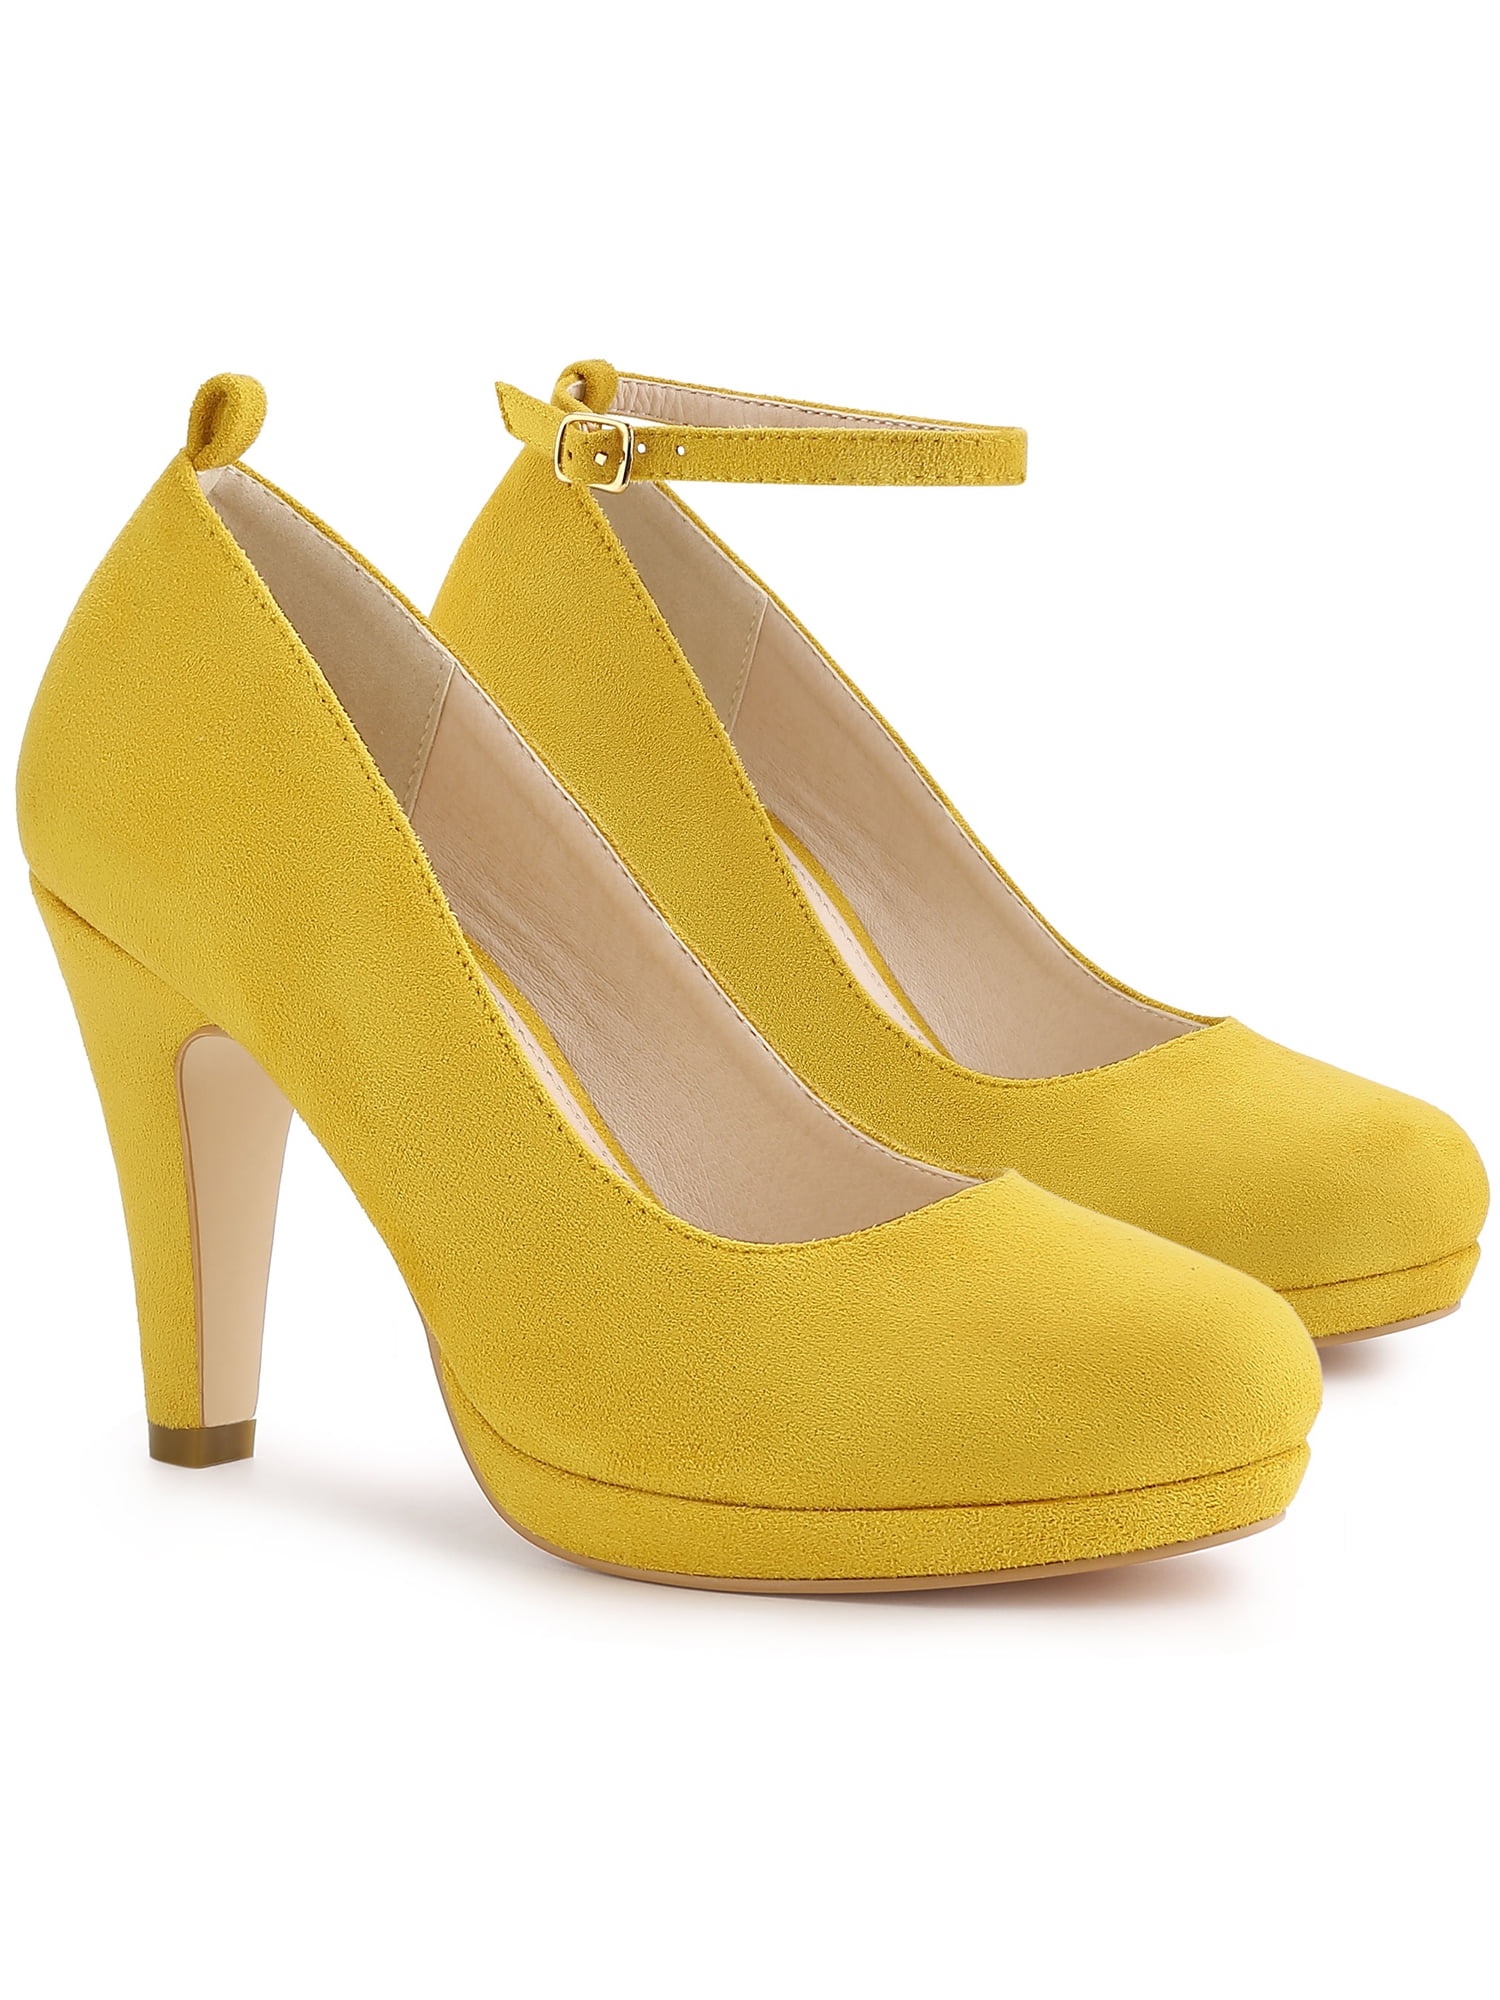 Women pointy toe stilettos high heel ankle strap dress shoeS party pumps plus SZ 